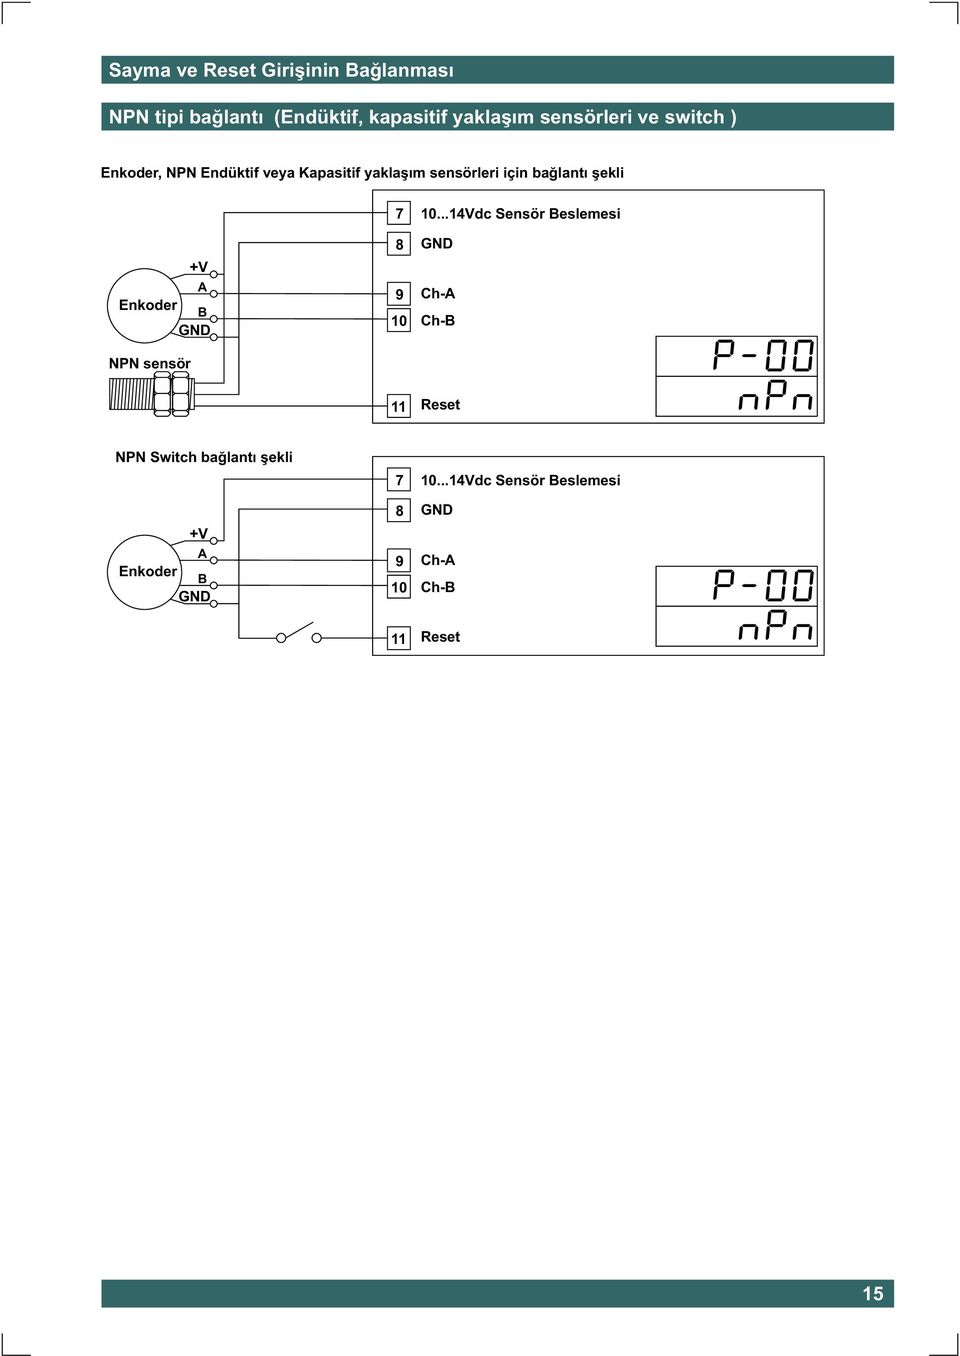 +V A Enkoder B GND NPN sensör 7 8 9 10 10.